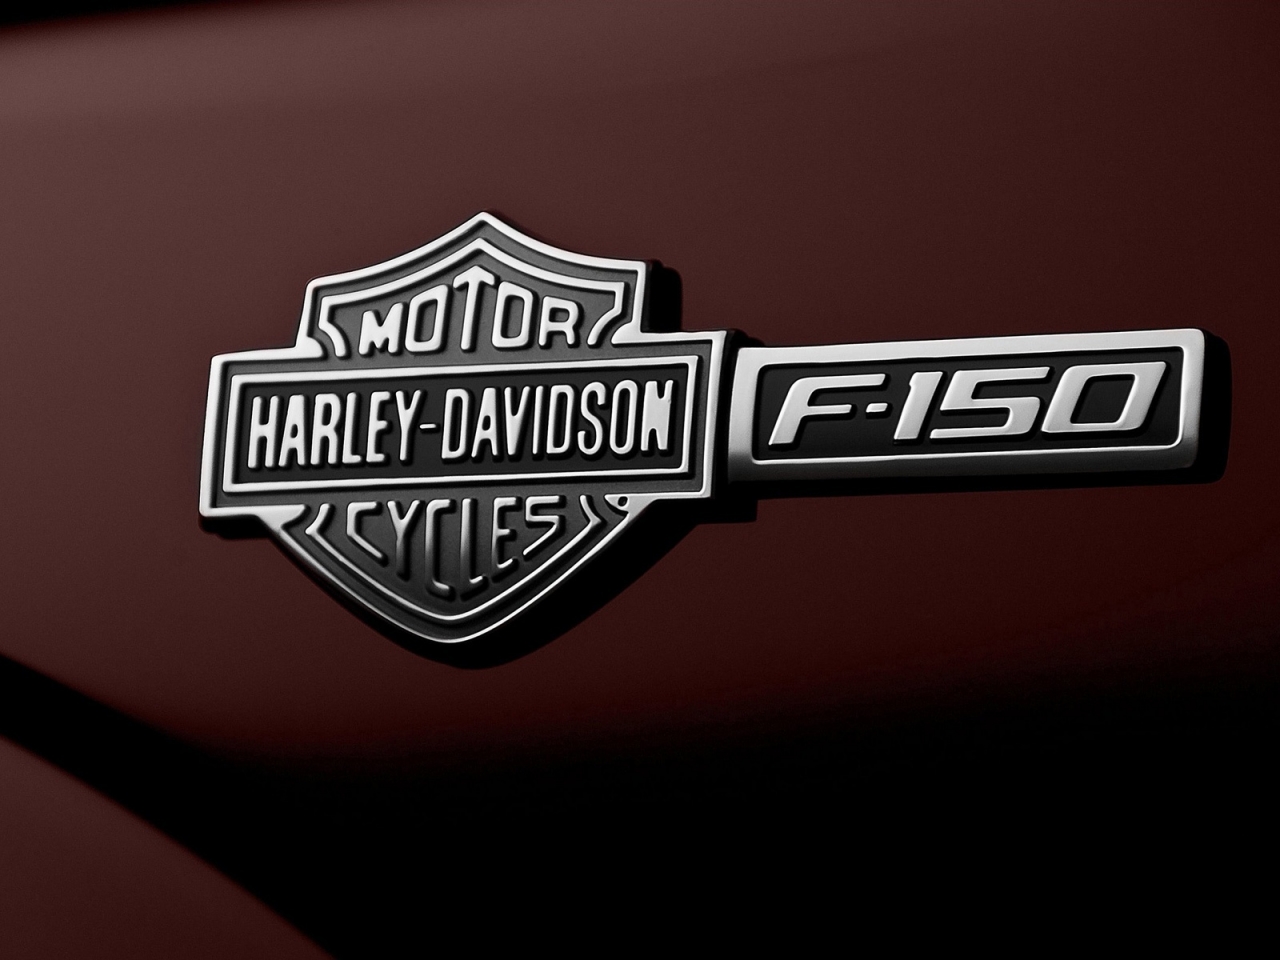 Ford F-150 Harley-Davidson Emblem for 1280 x 960 resolution